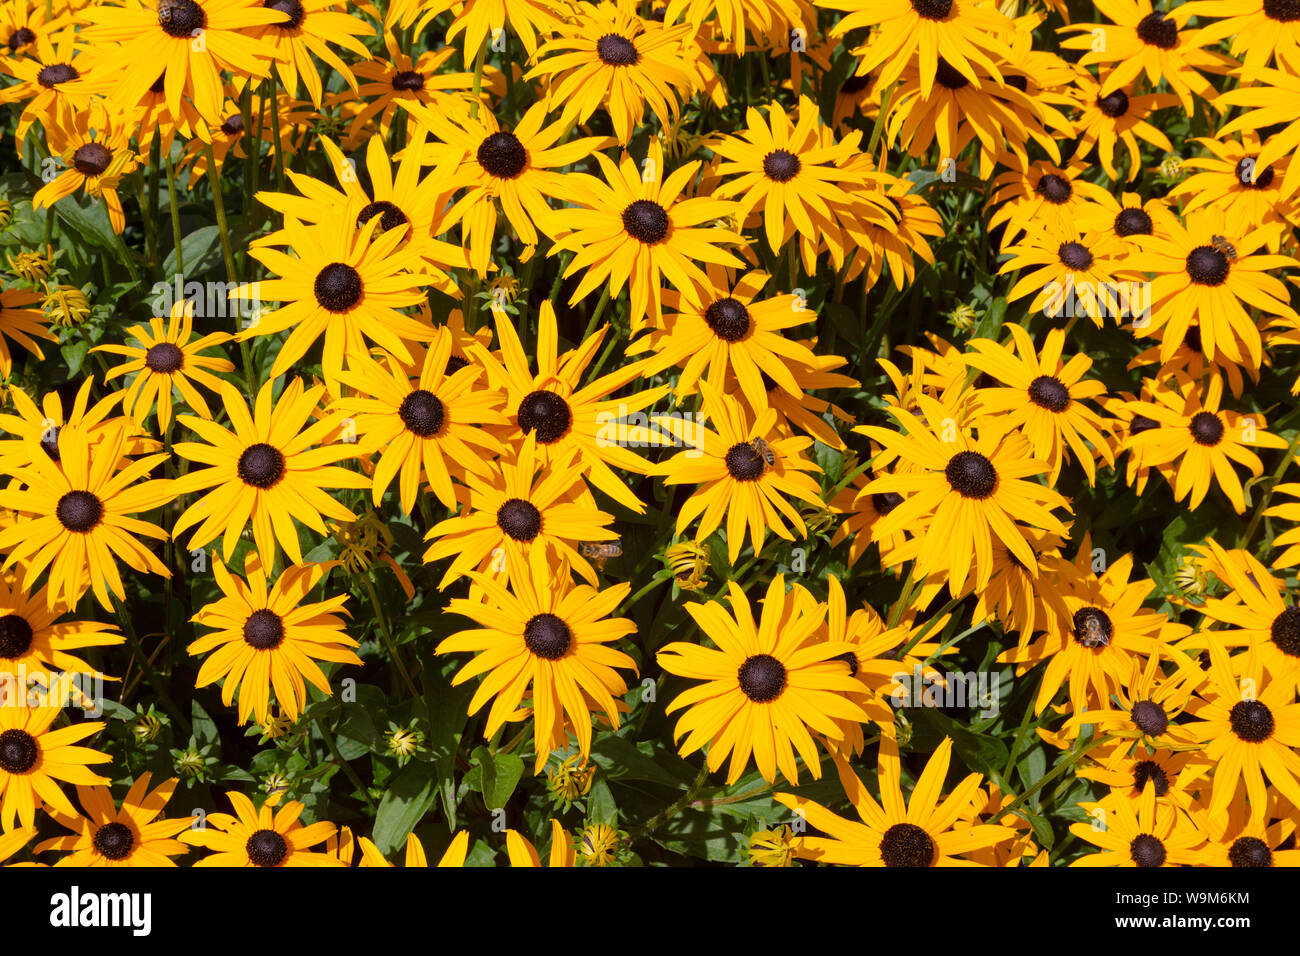 Rudbeckia hirta oder Black Eyed Susan Blumen, gelbe daisy Blüten mit schwarzer Mitte. Stockfoto